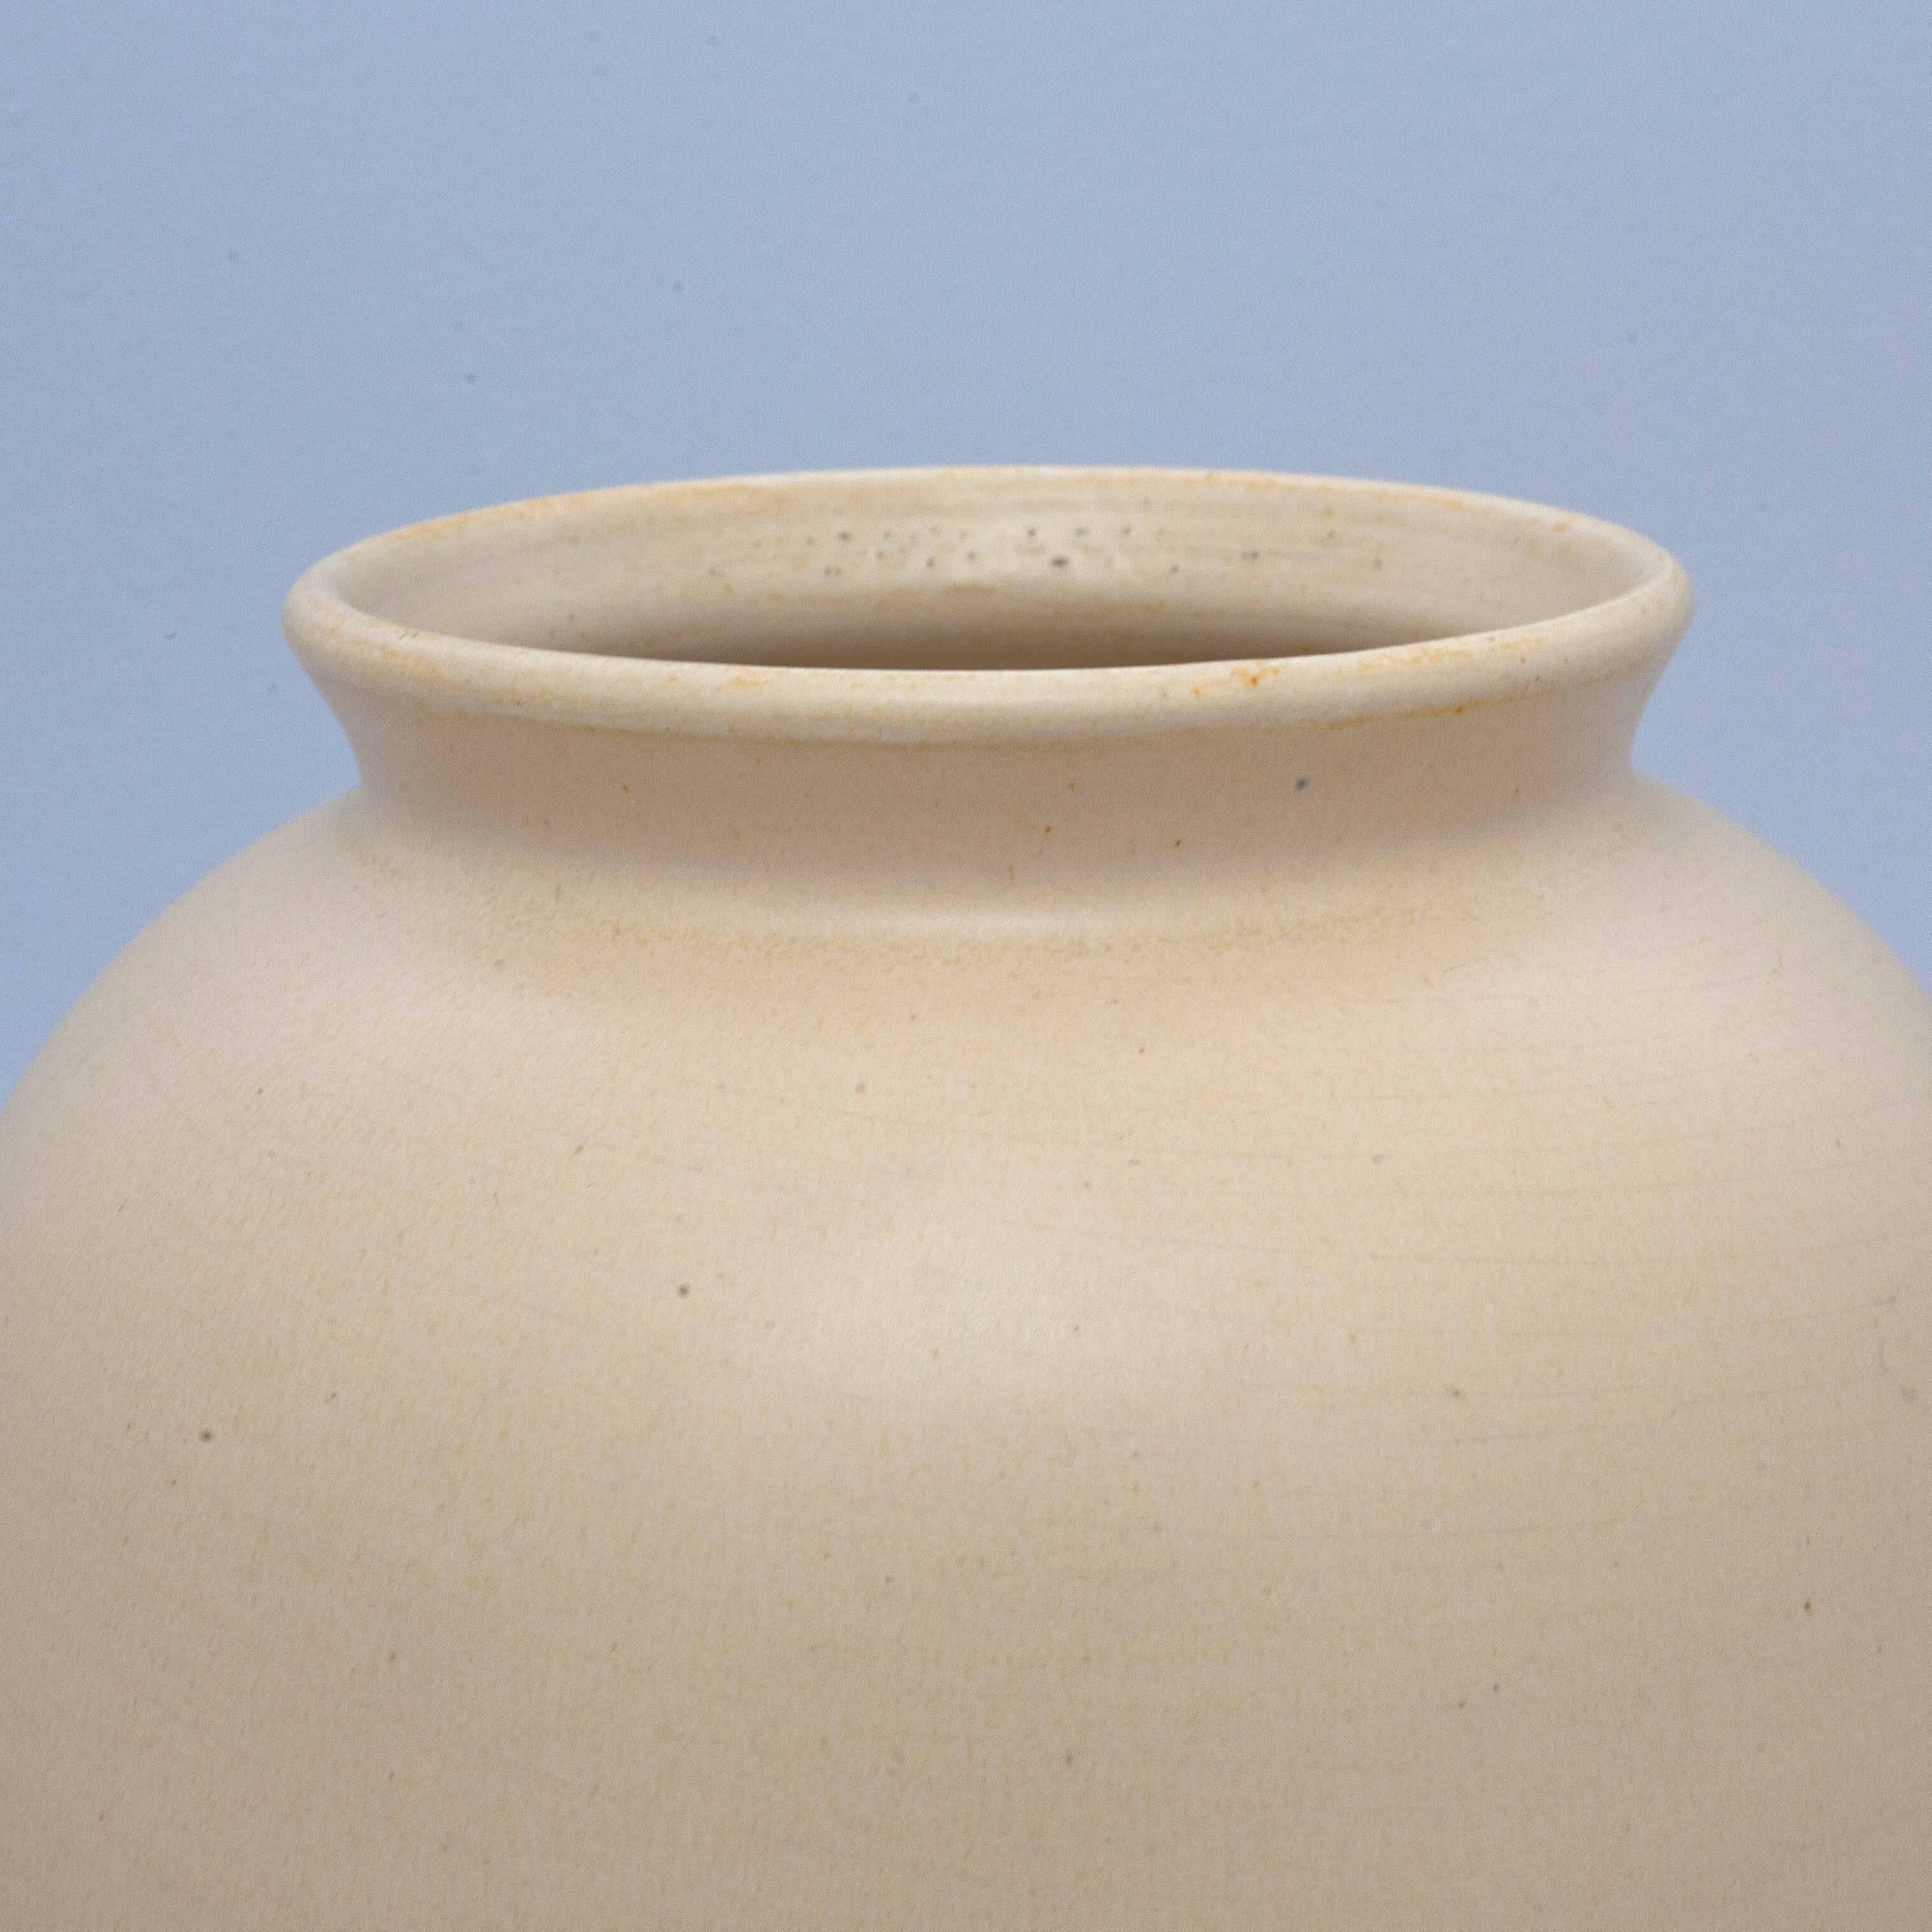 Cream colored ceramic vase produced by Dutch manufacturer ADCO (N.V. Groninger Steenfabrieken).